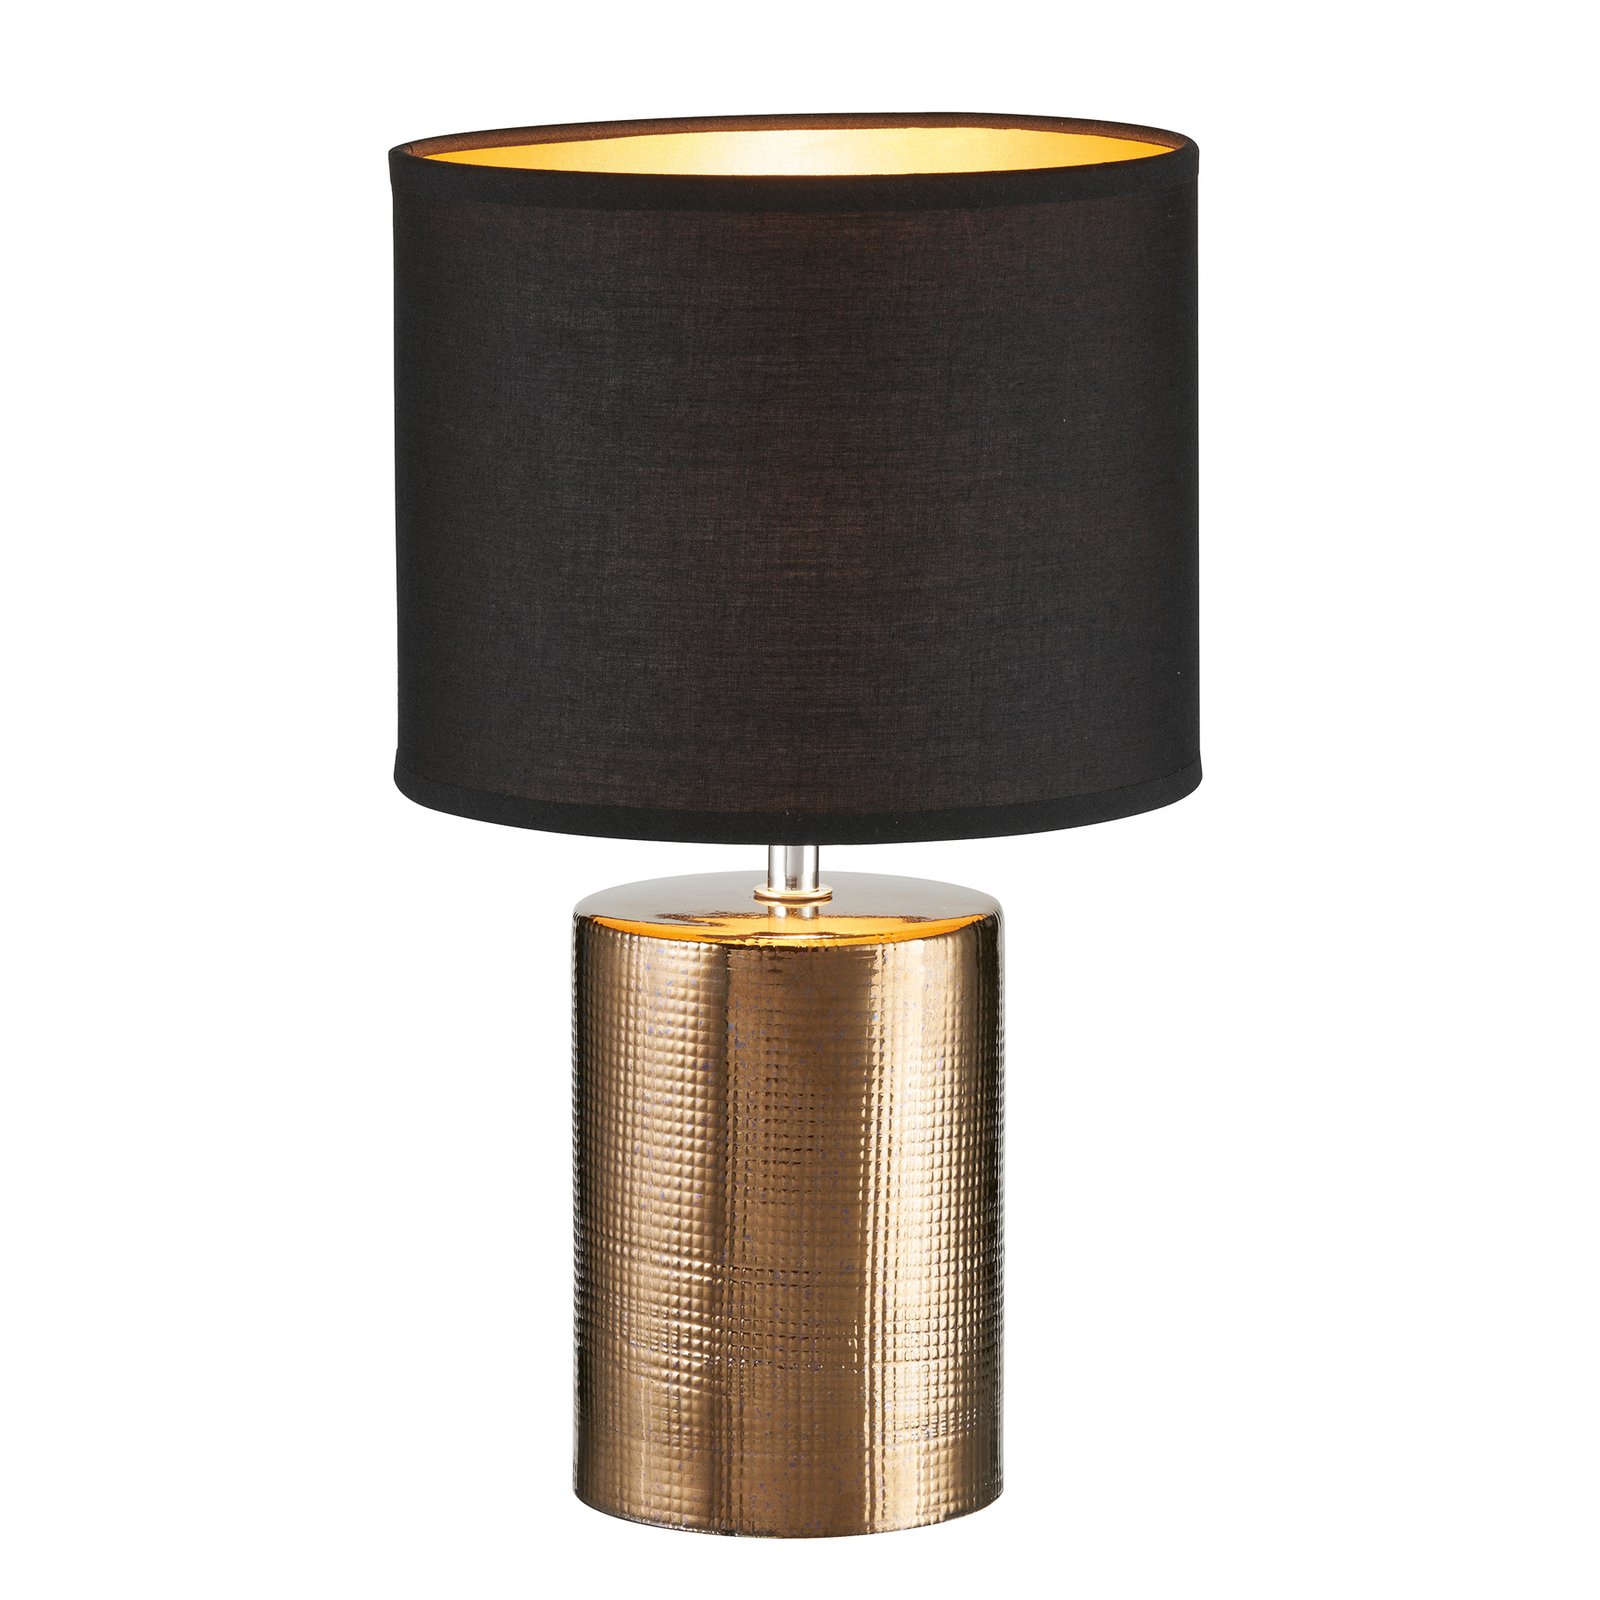 Bronz lampada da tavolo, cilindrica, nero/bronzo